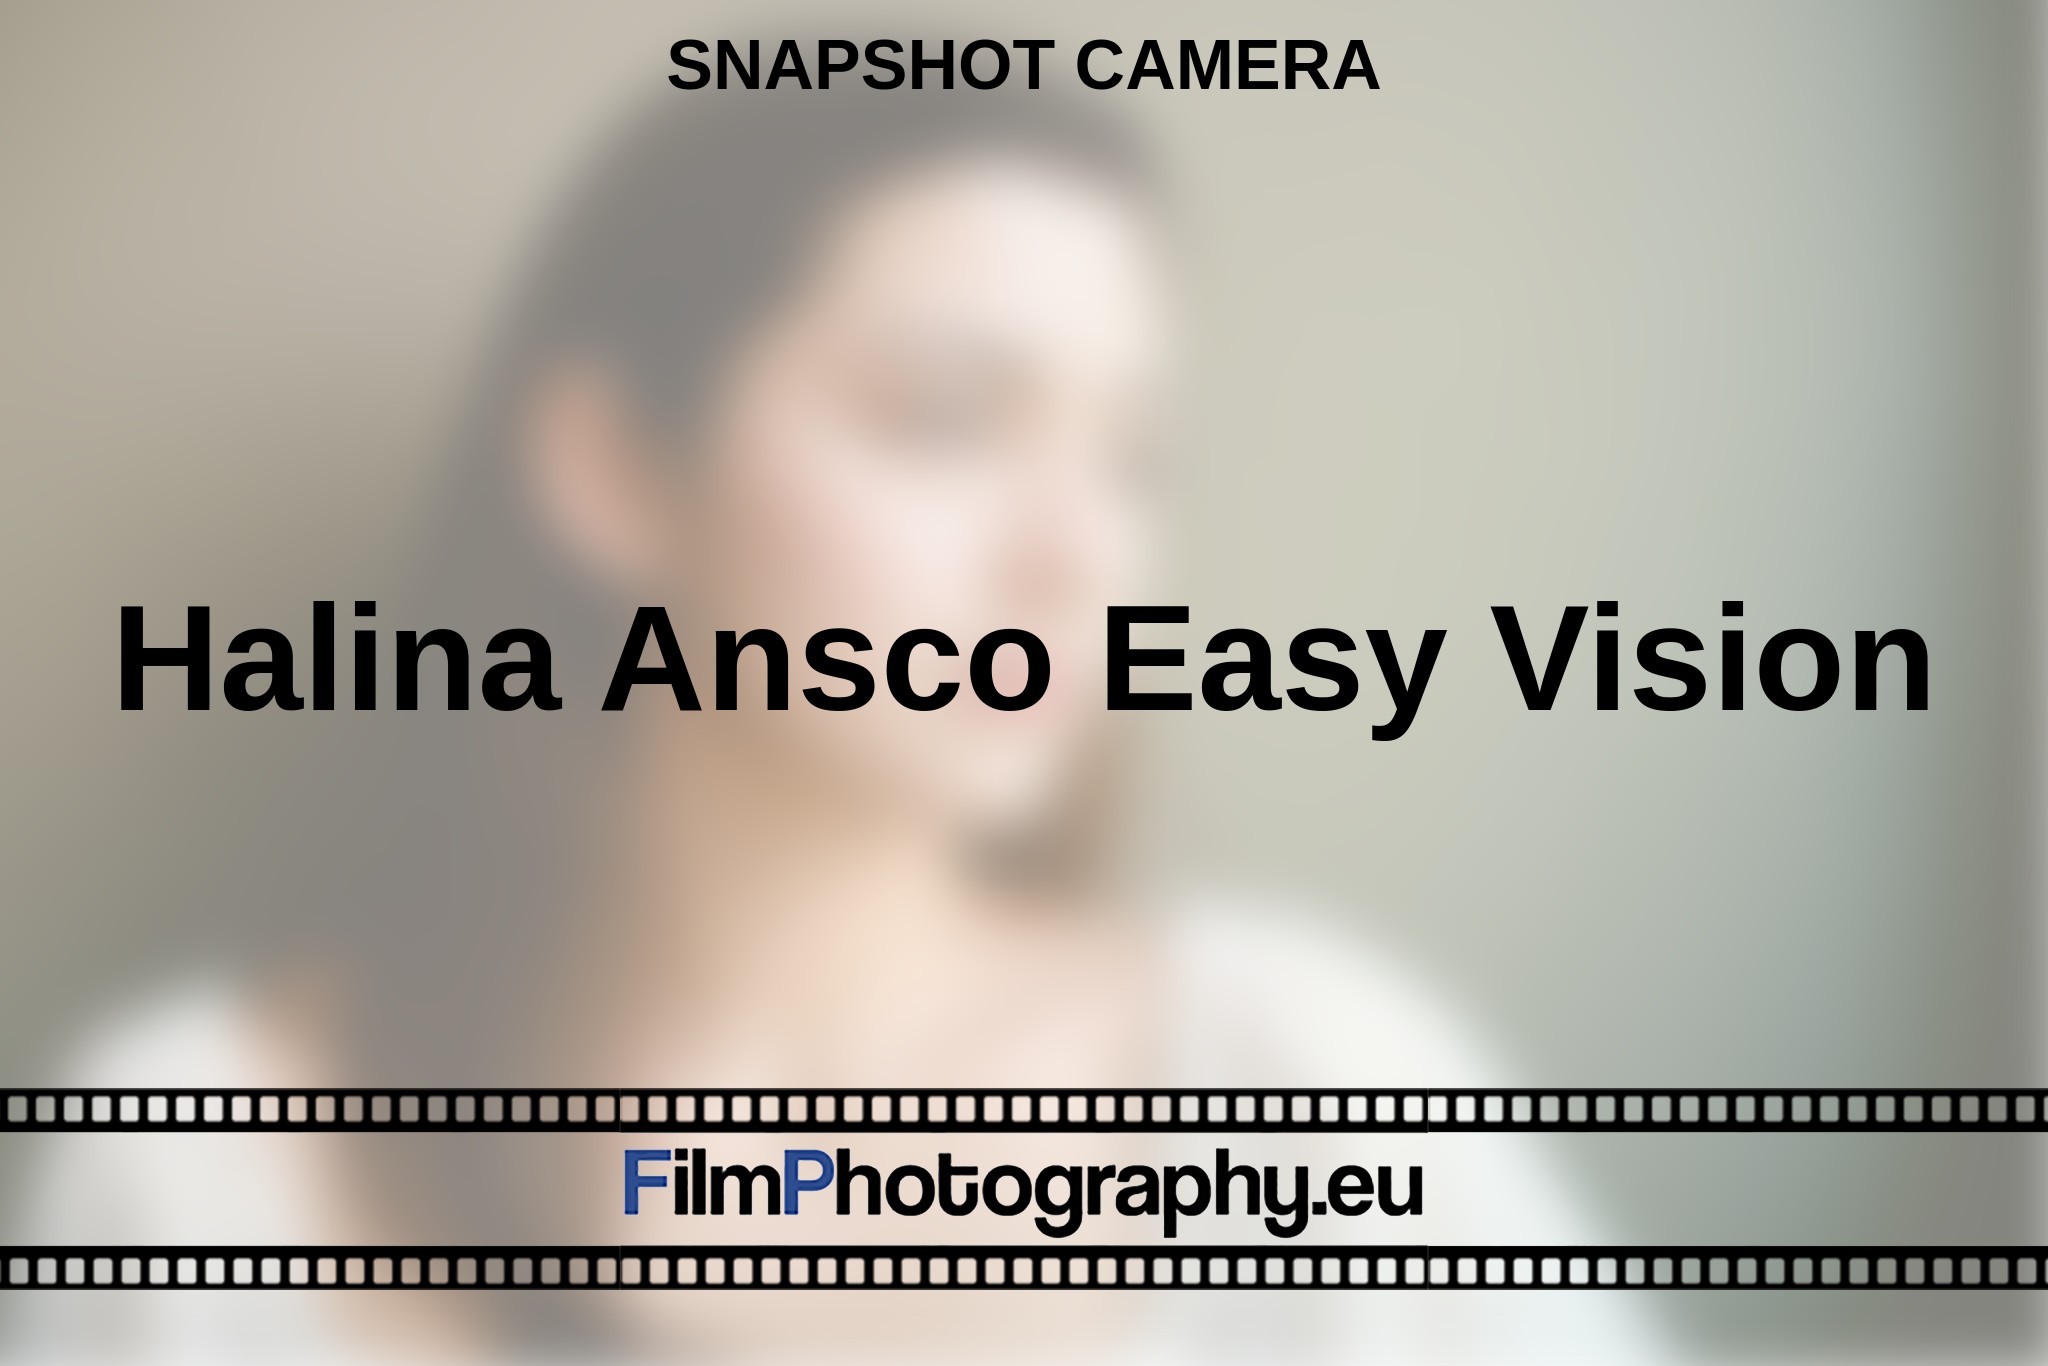 halina-ansco-easy-vision-snapshot-camera-en-bnv.jpg